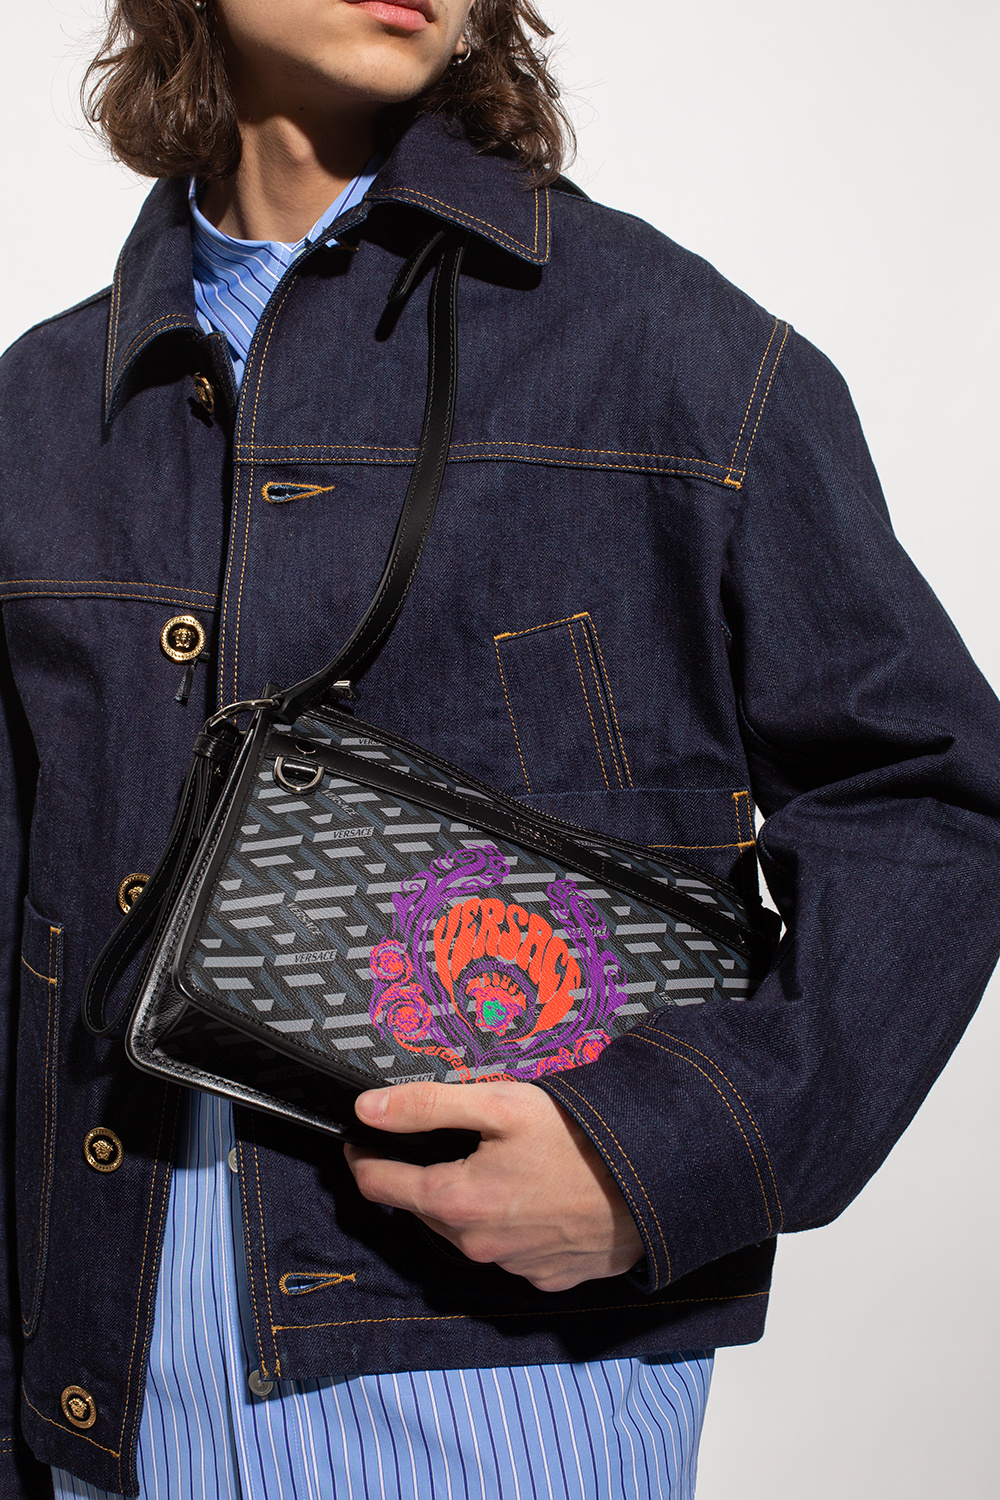 Versace Shoulder bag with Medusa Music print